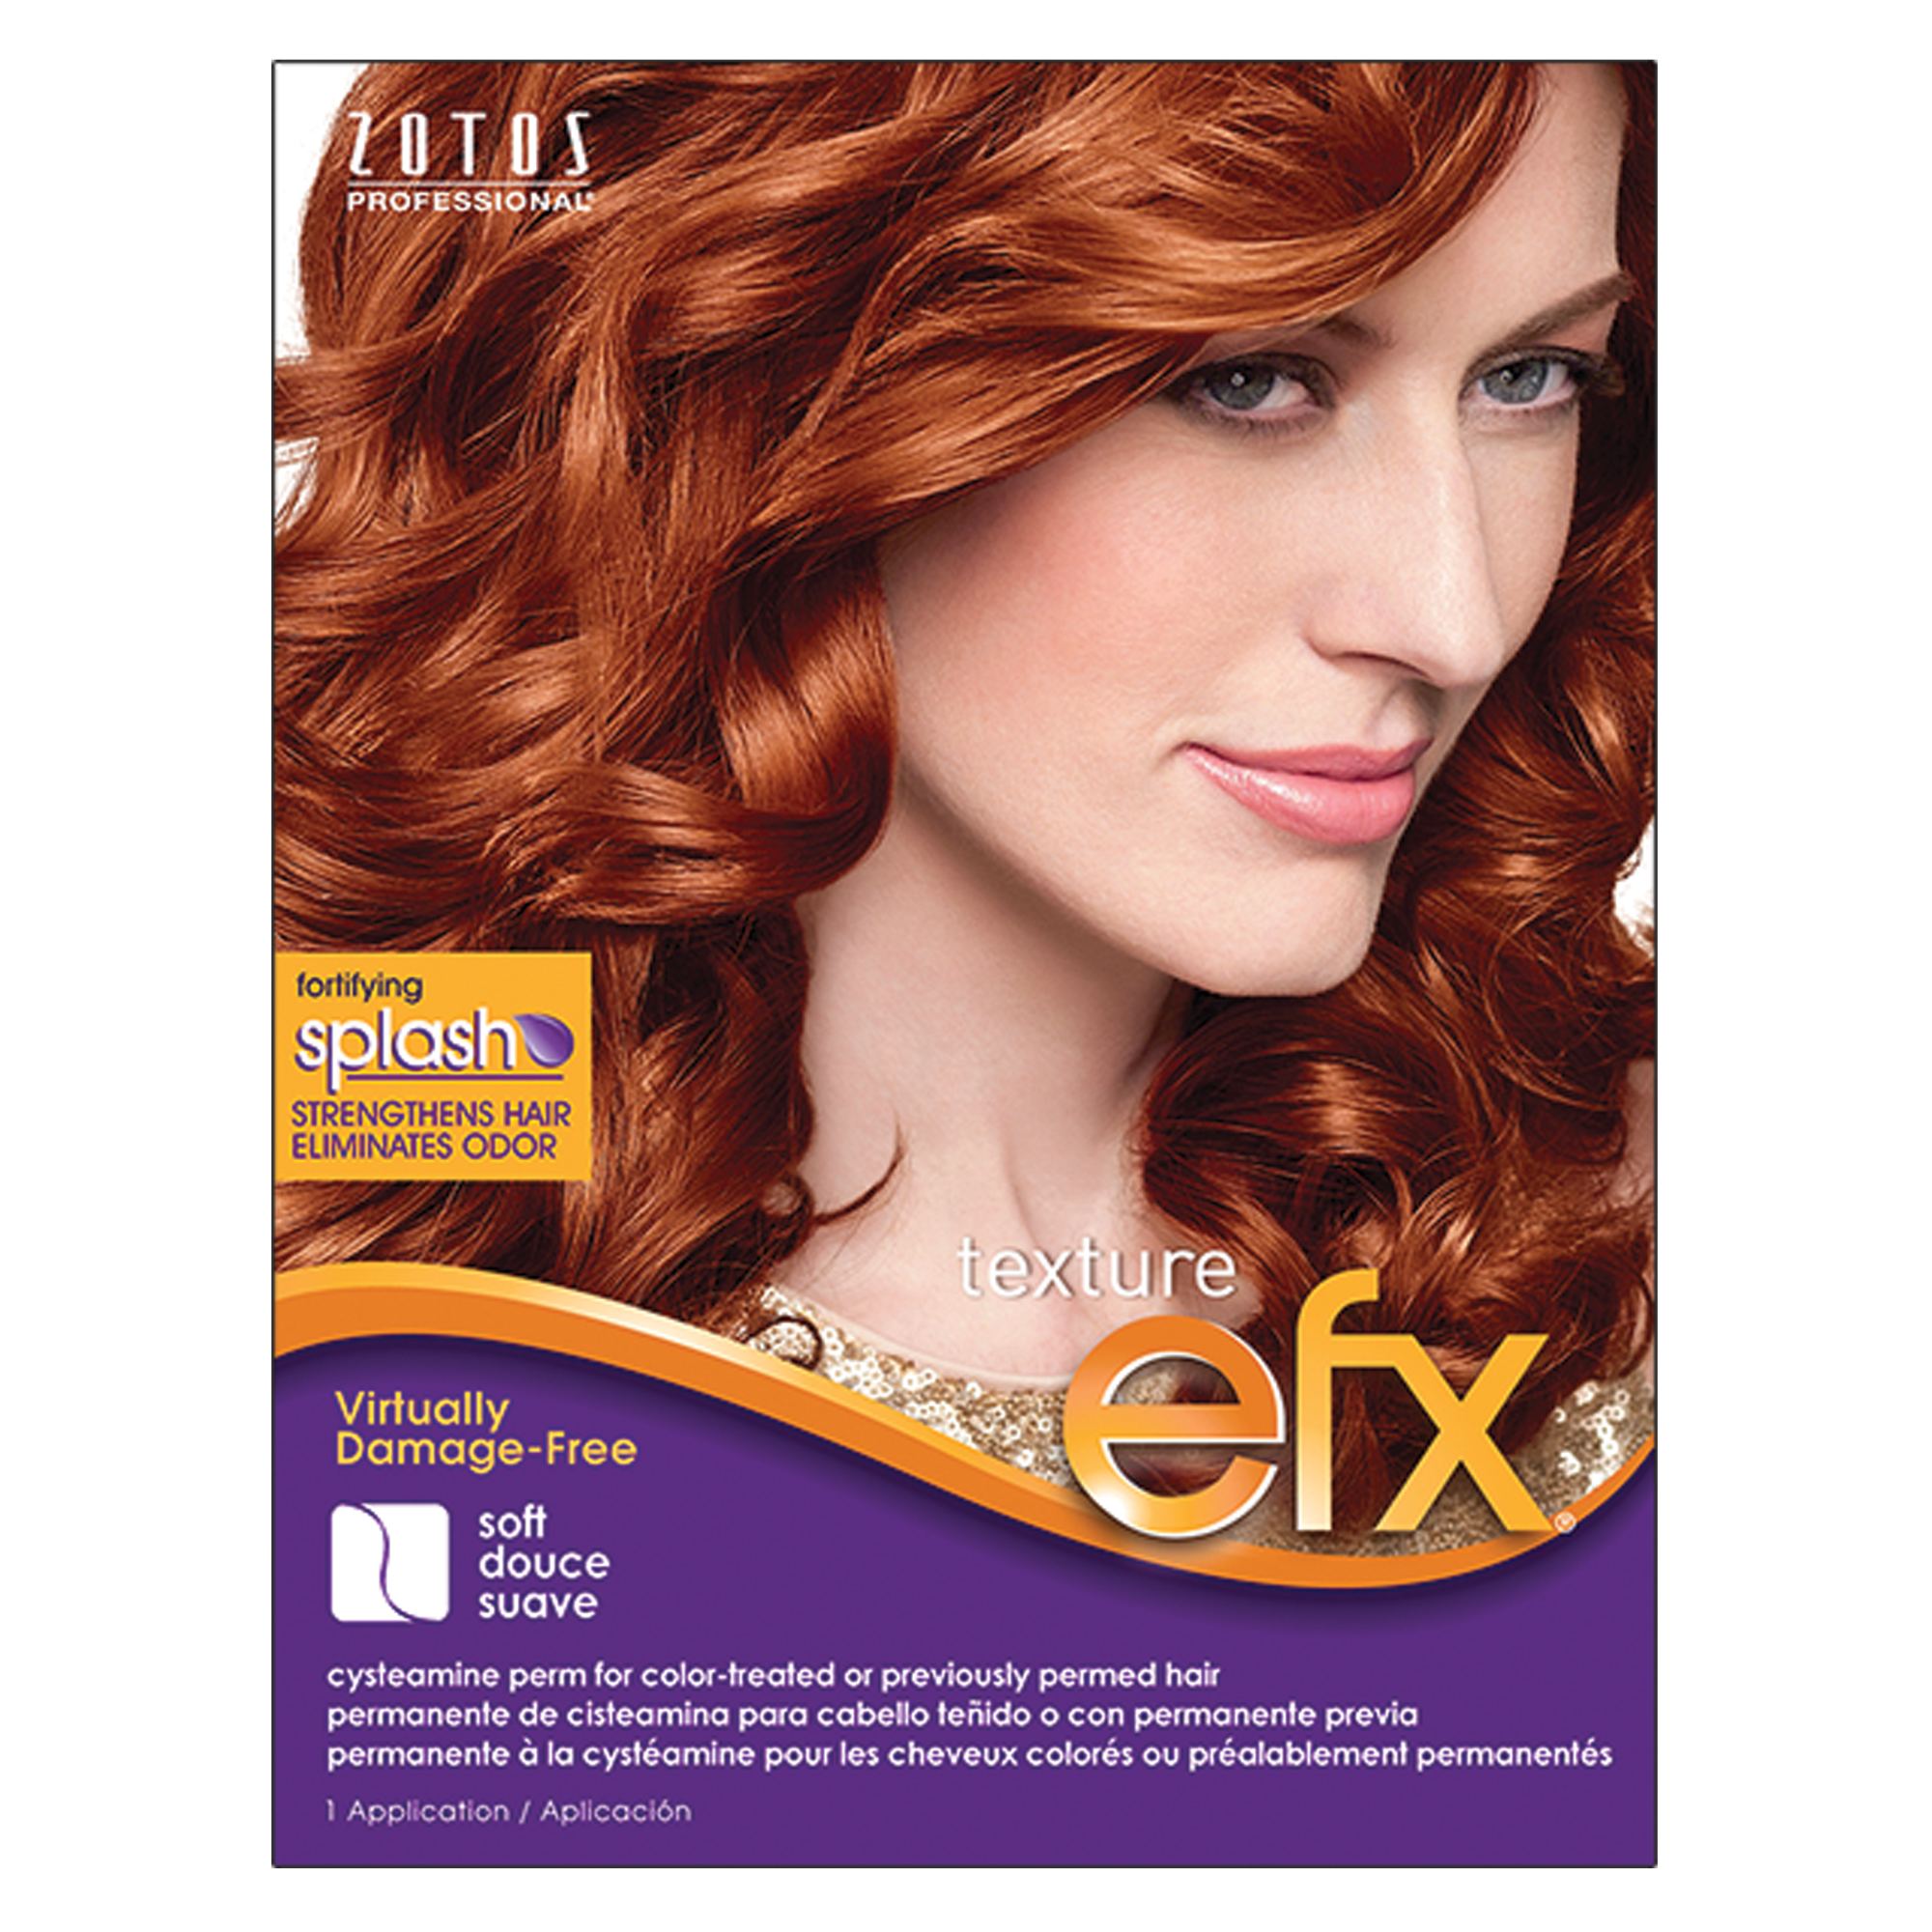 Texture EFX Color Treated Hair